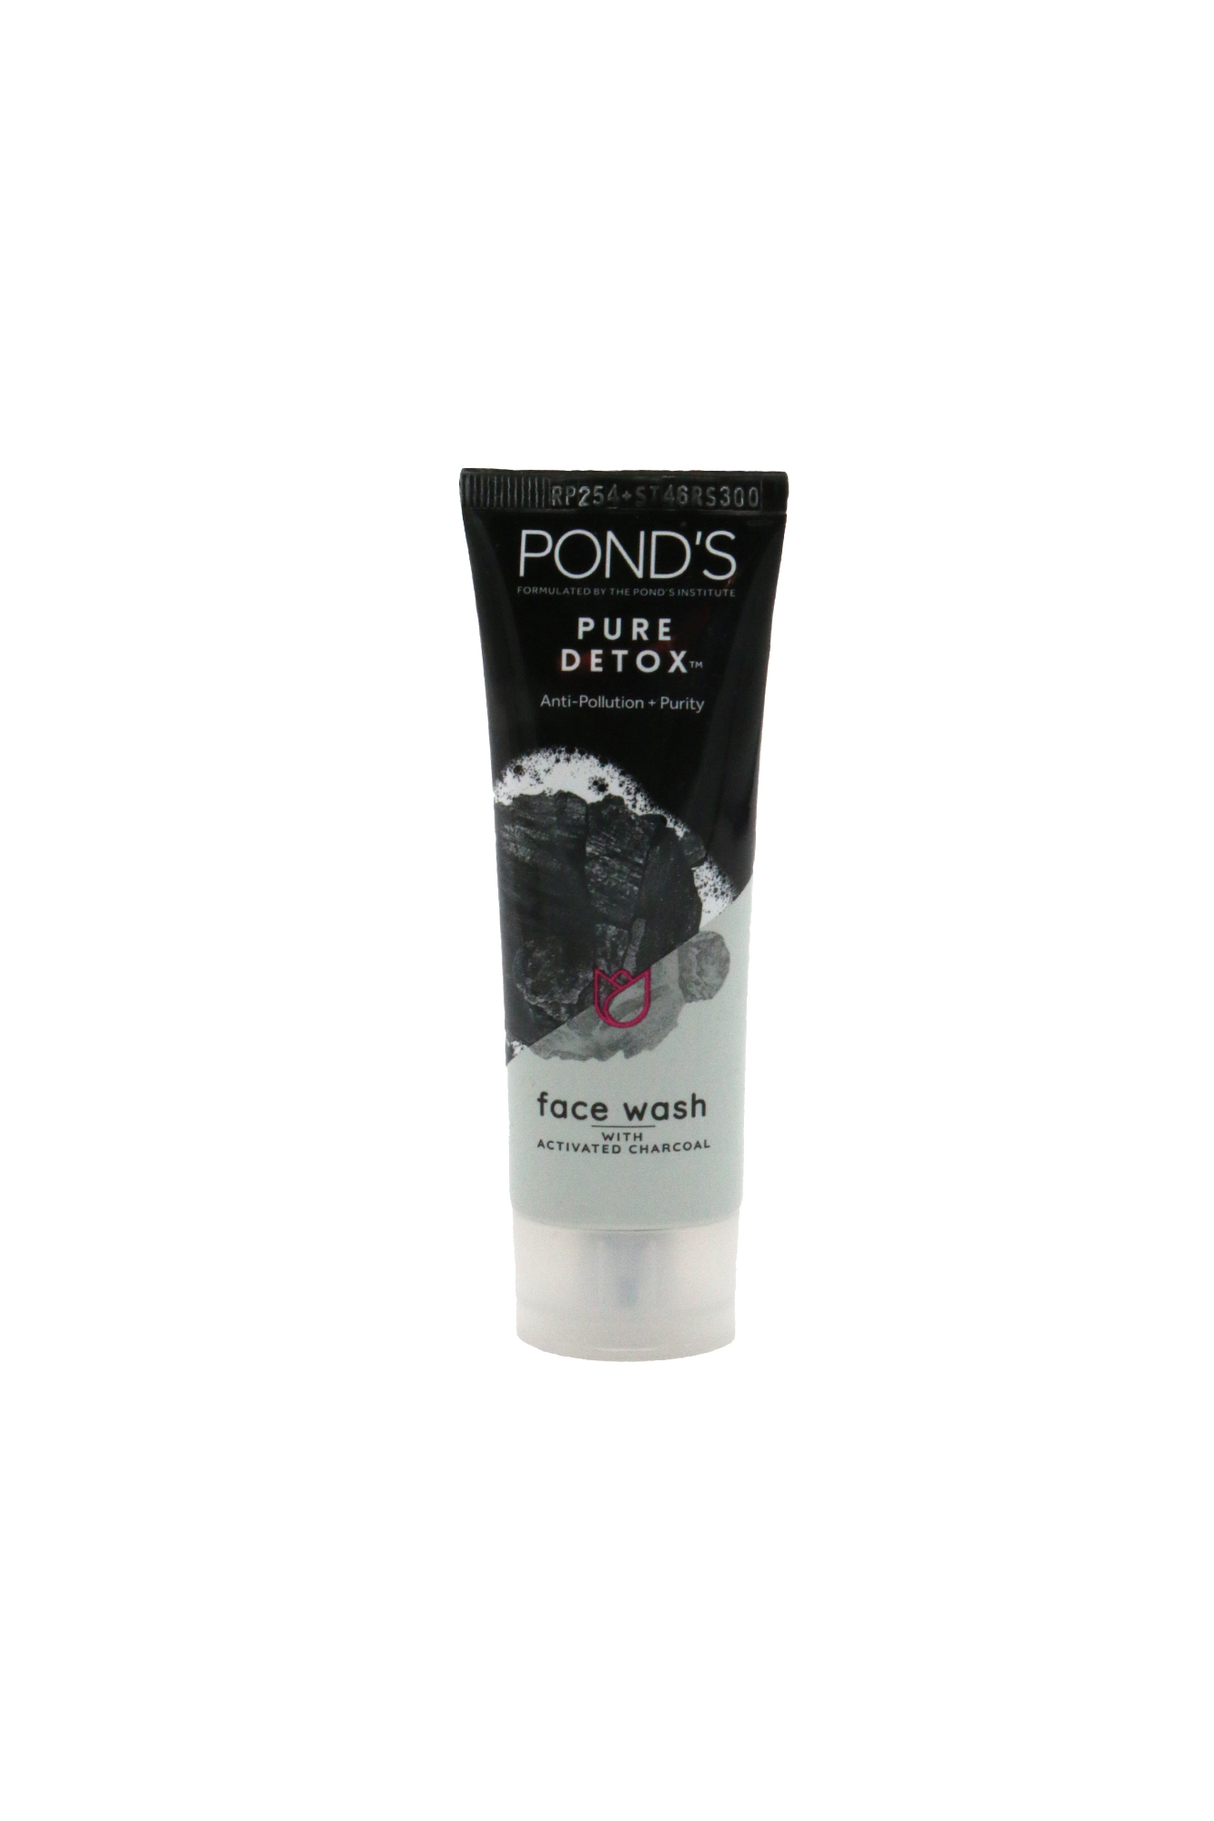 ponds face wash pure detox 50g